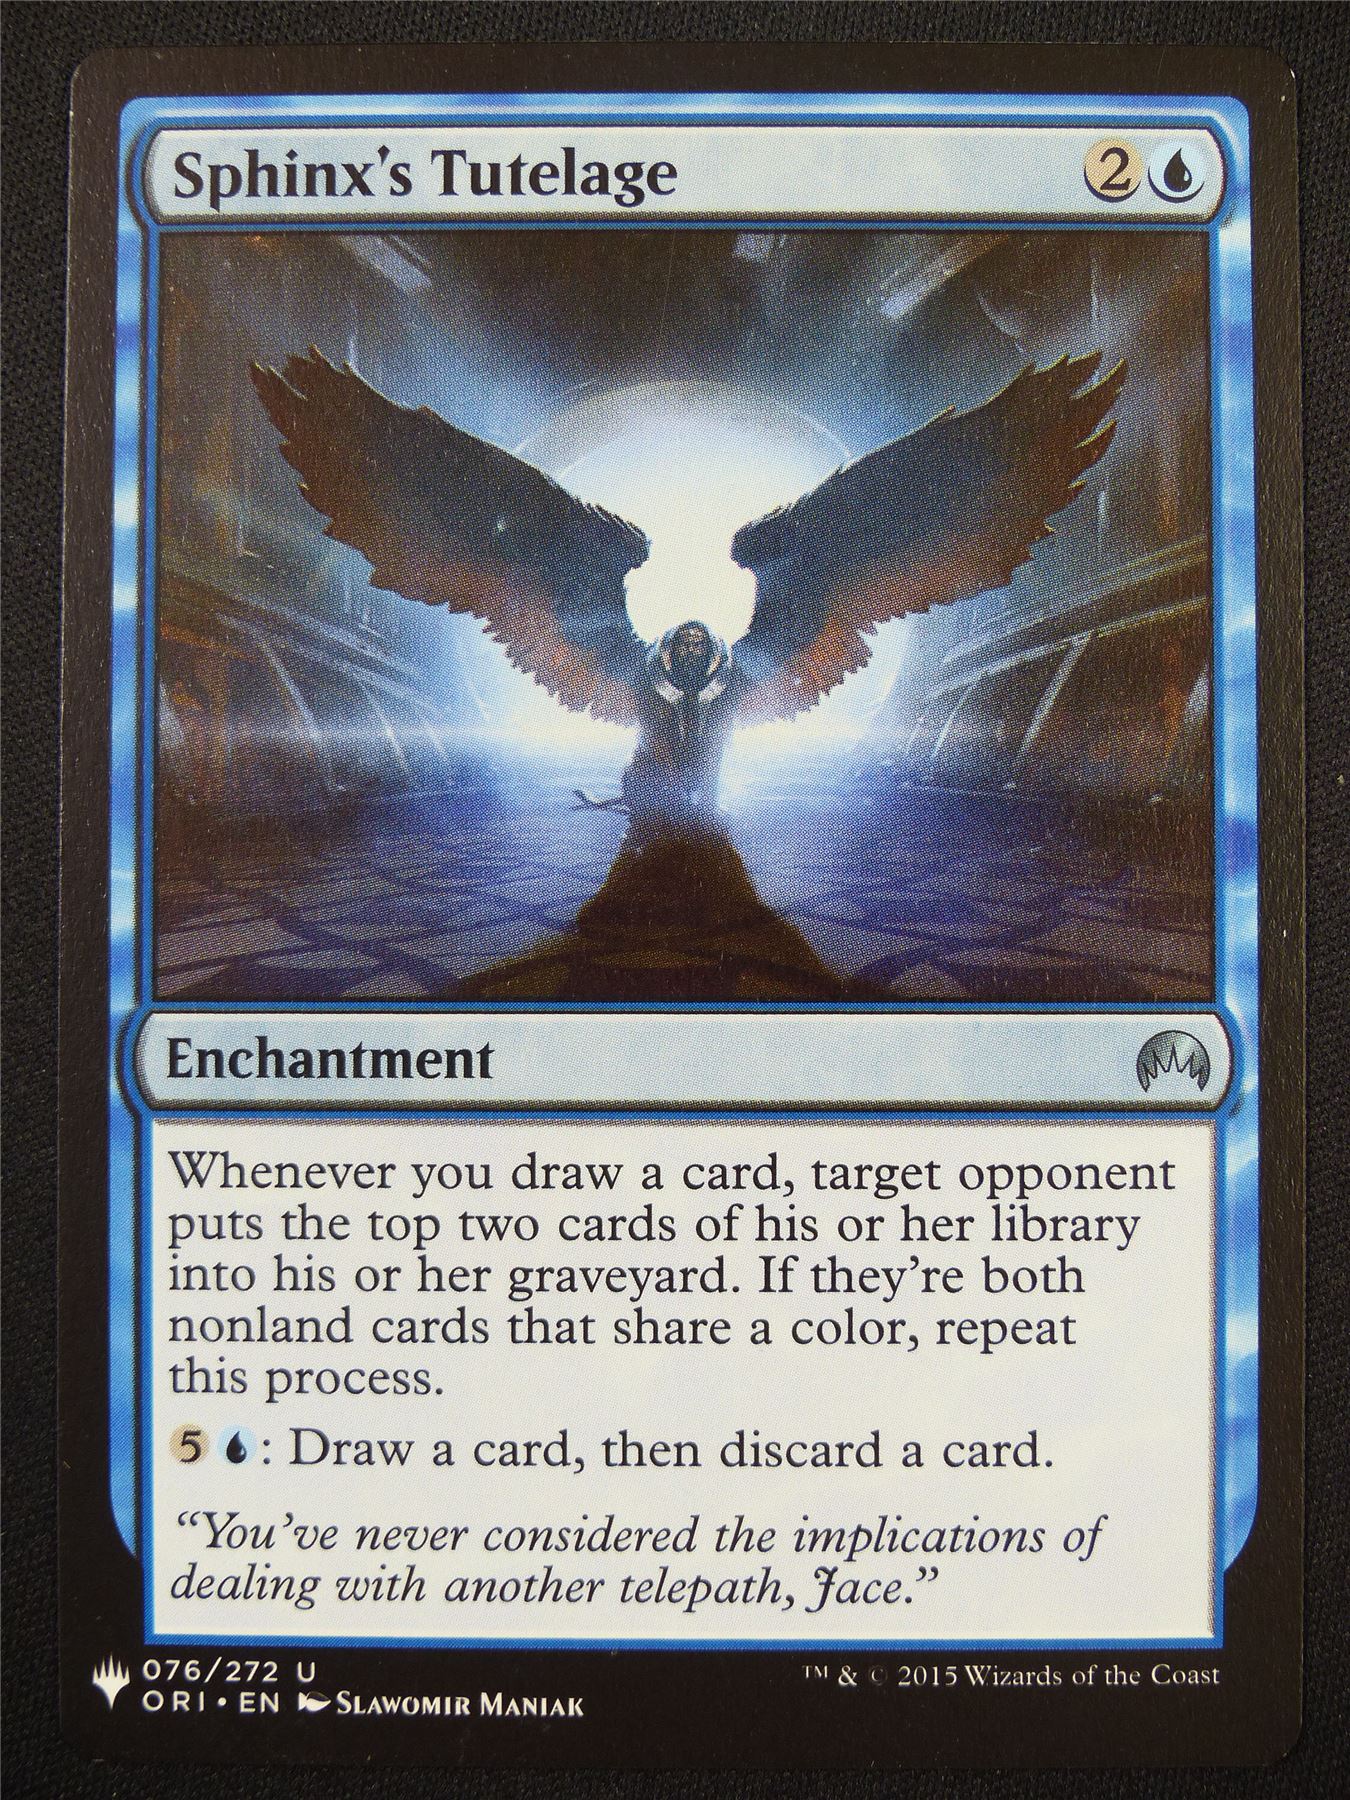 Sphinx's Tutelage - ORI - Mtg Card #5HR